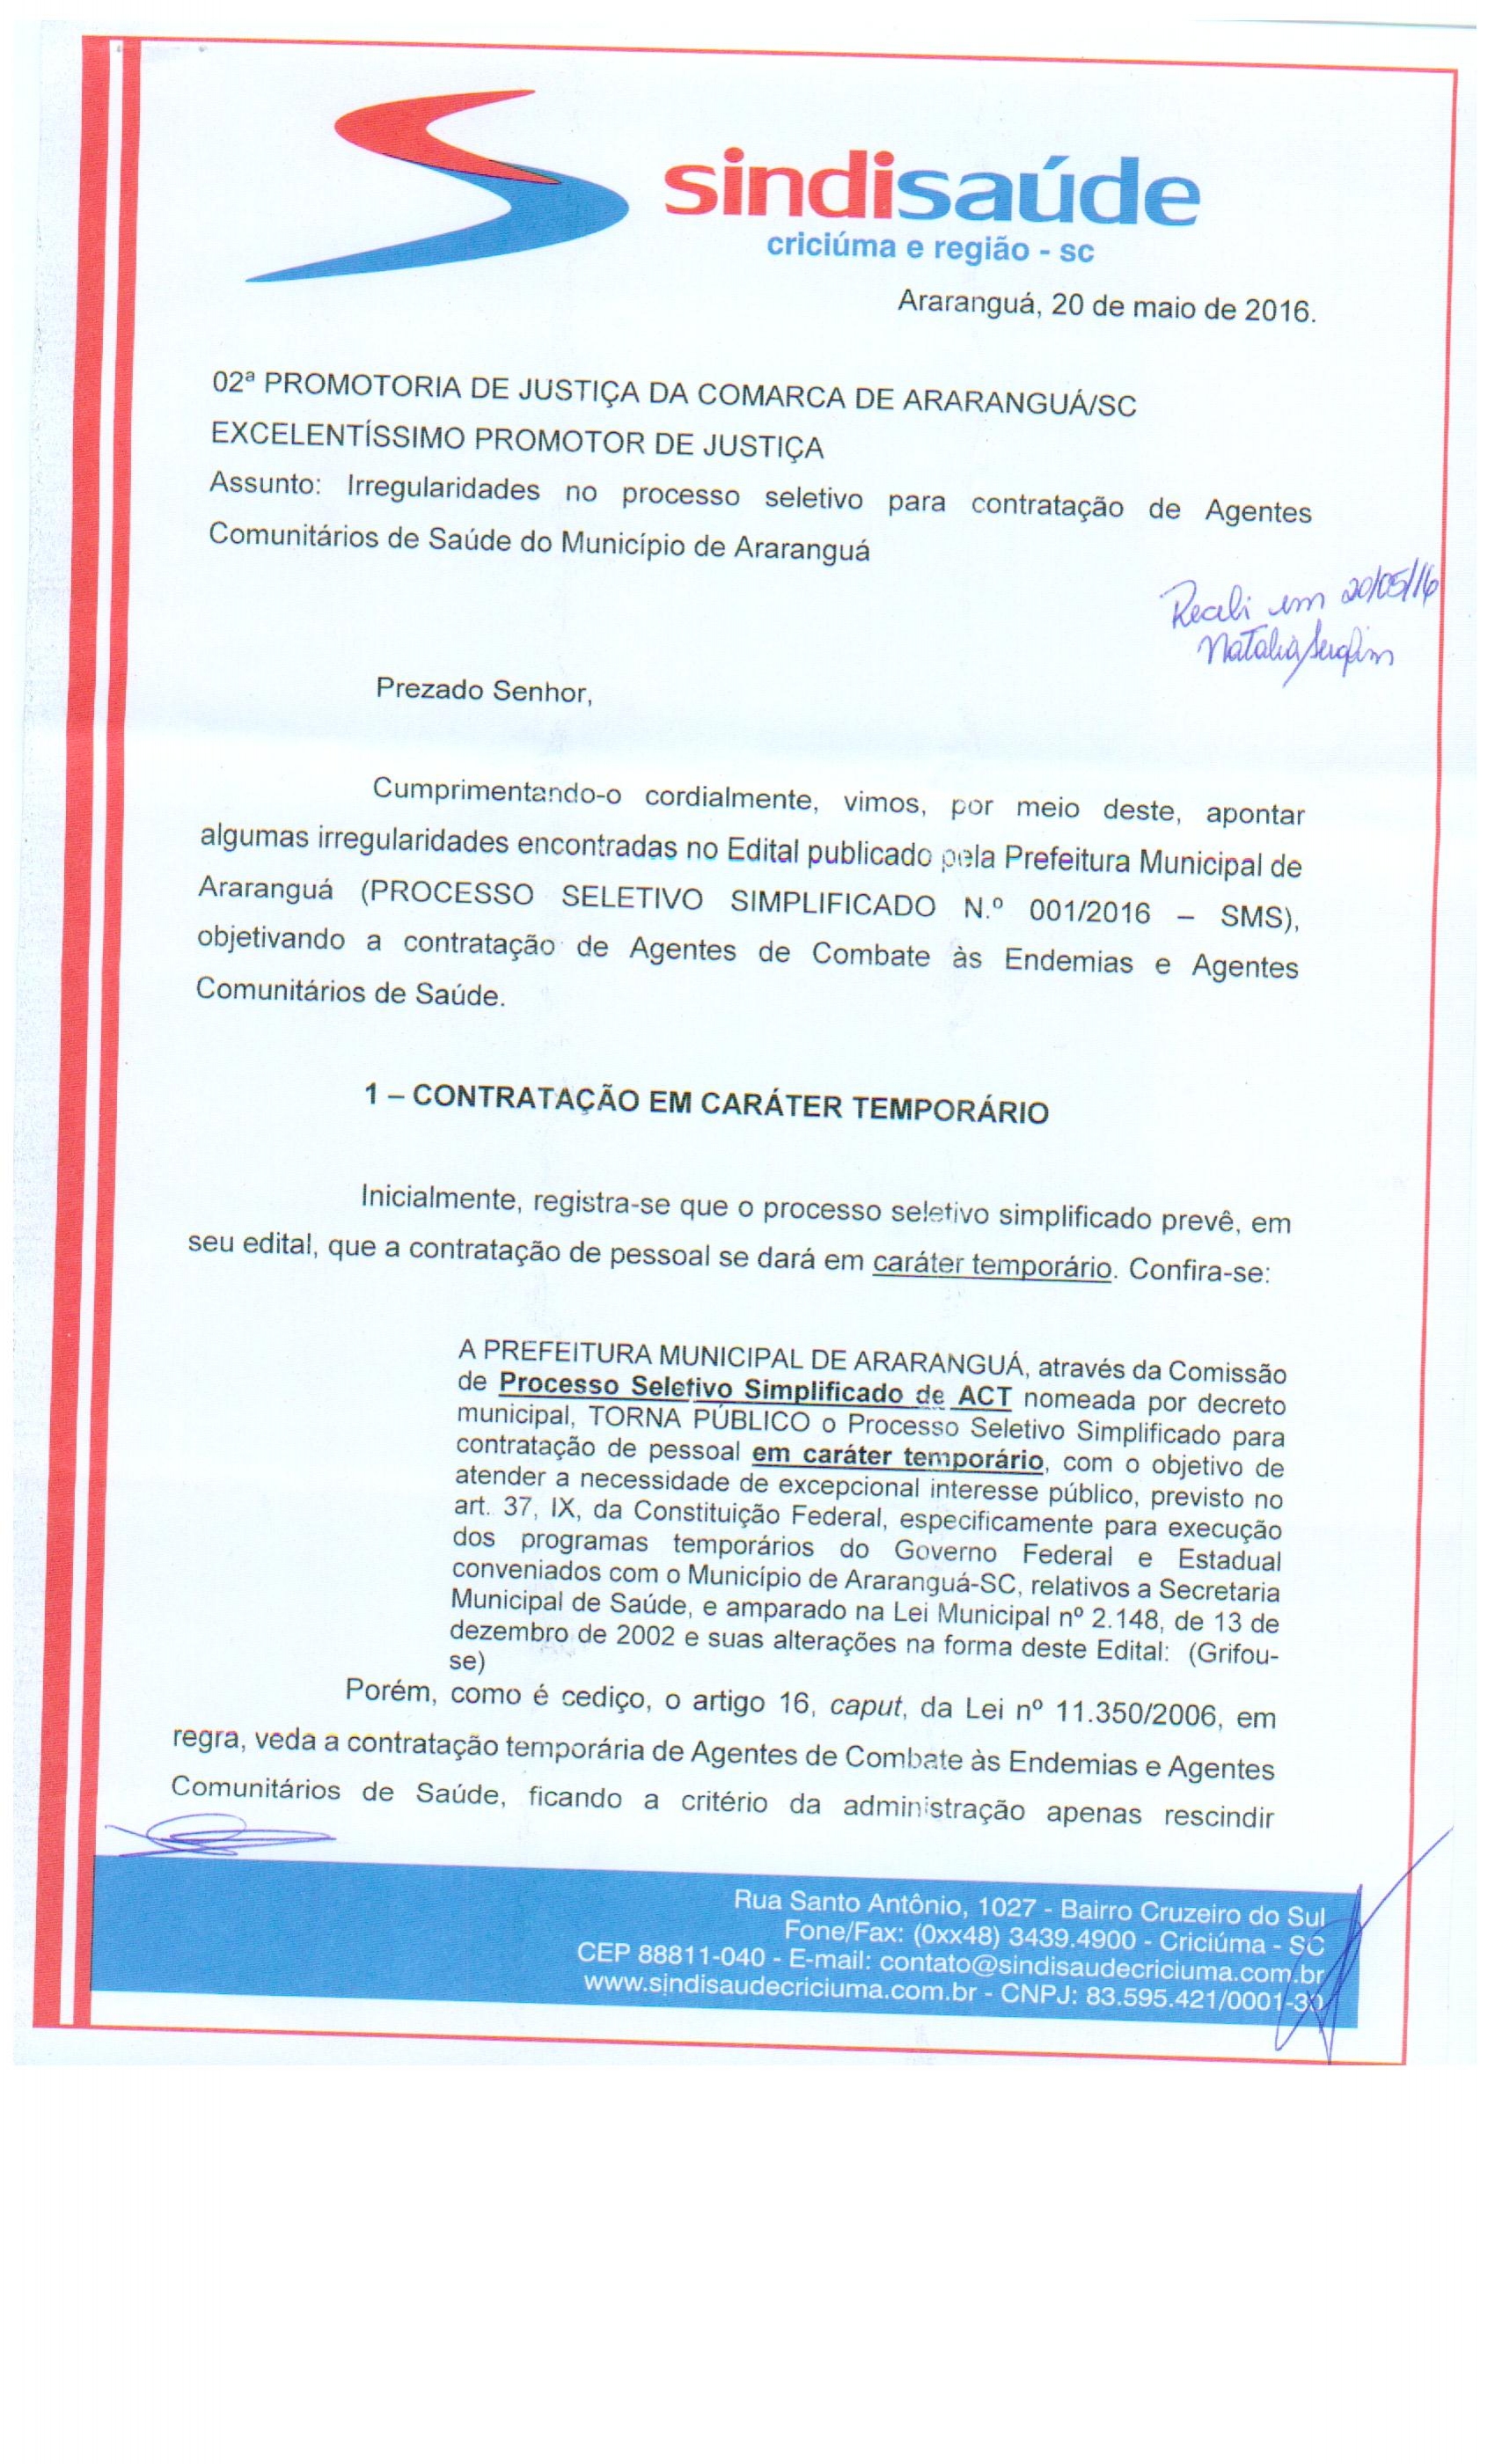 Petição de cancelamento de edital de processo seletivo dos agentes comun. de saúde do município de Araranguá.